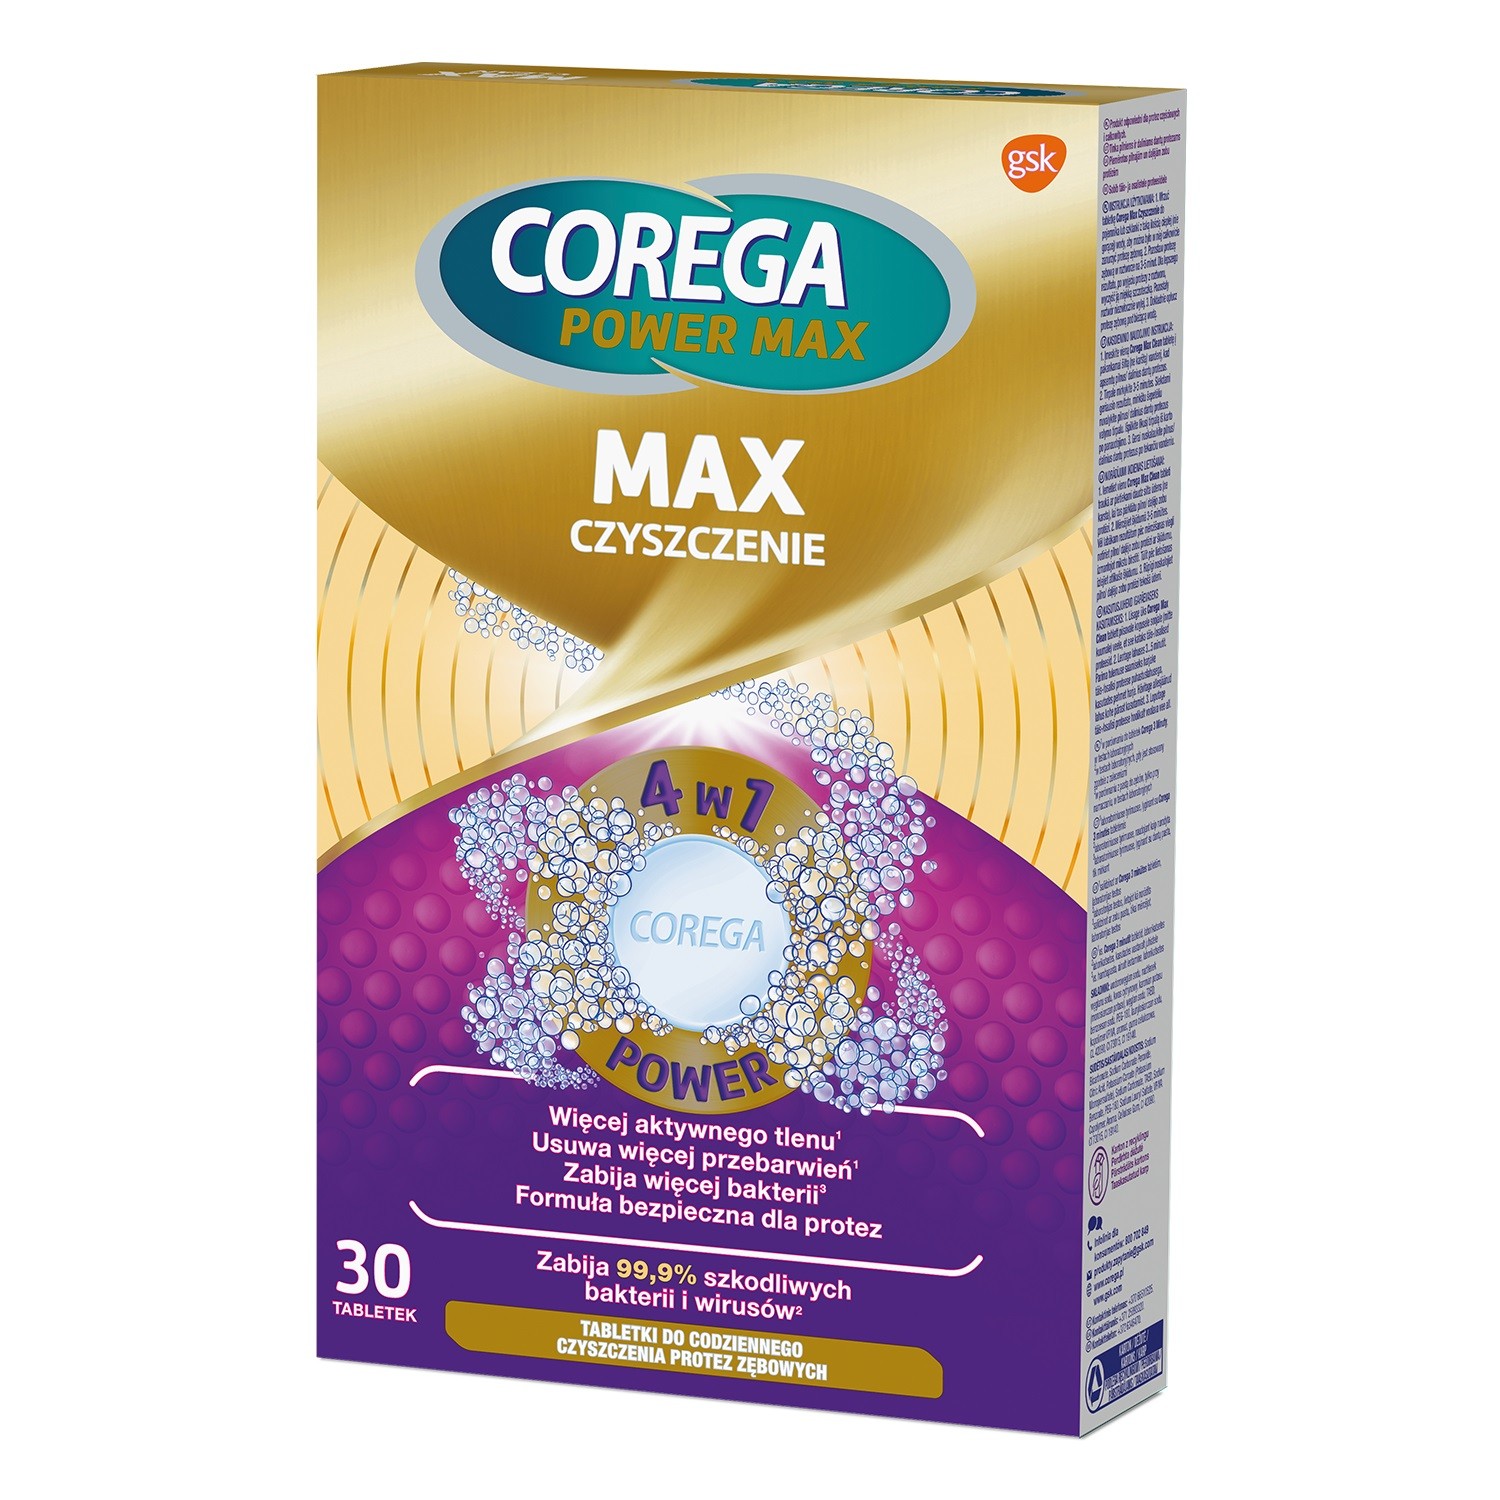 COREGA Power Max Tabletki do codziennego czyszczenia protez zębowych Max Czyszczenie 4w1  1op.-30szt